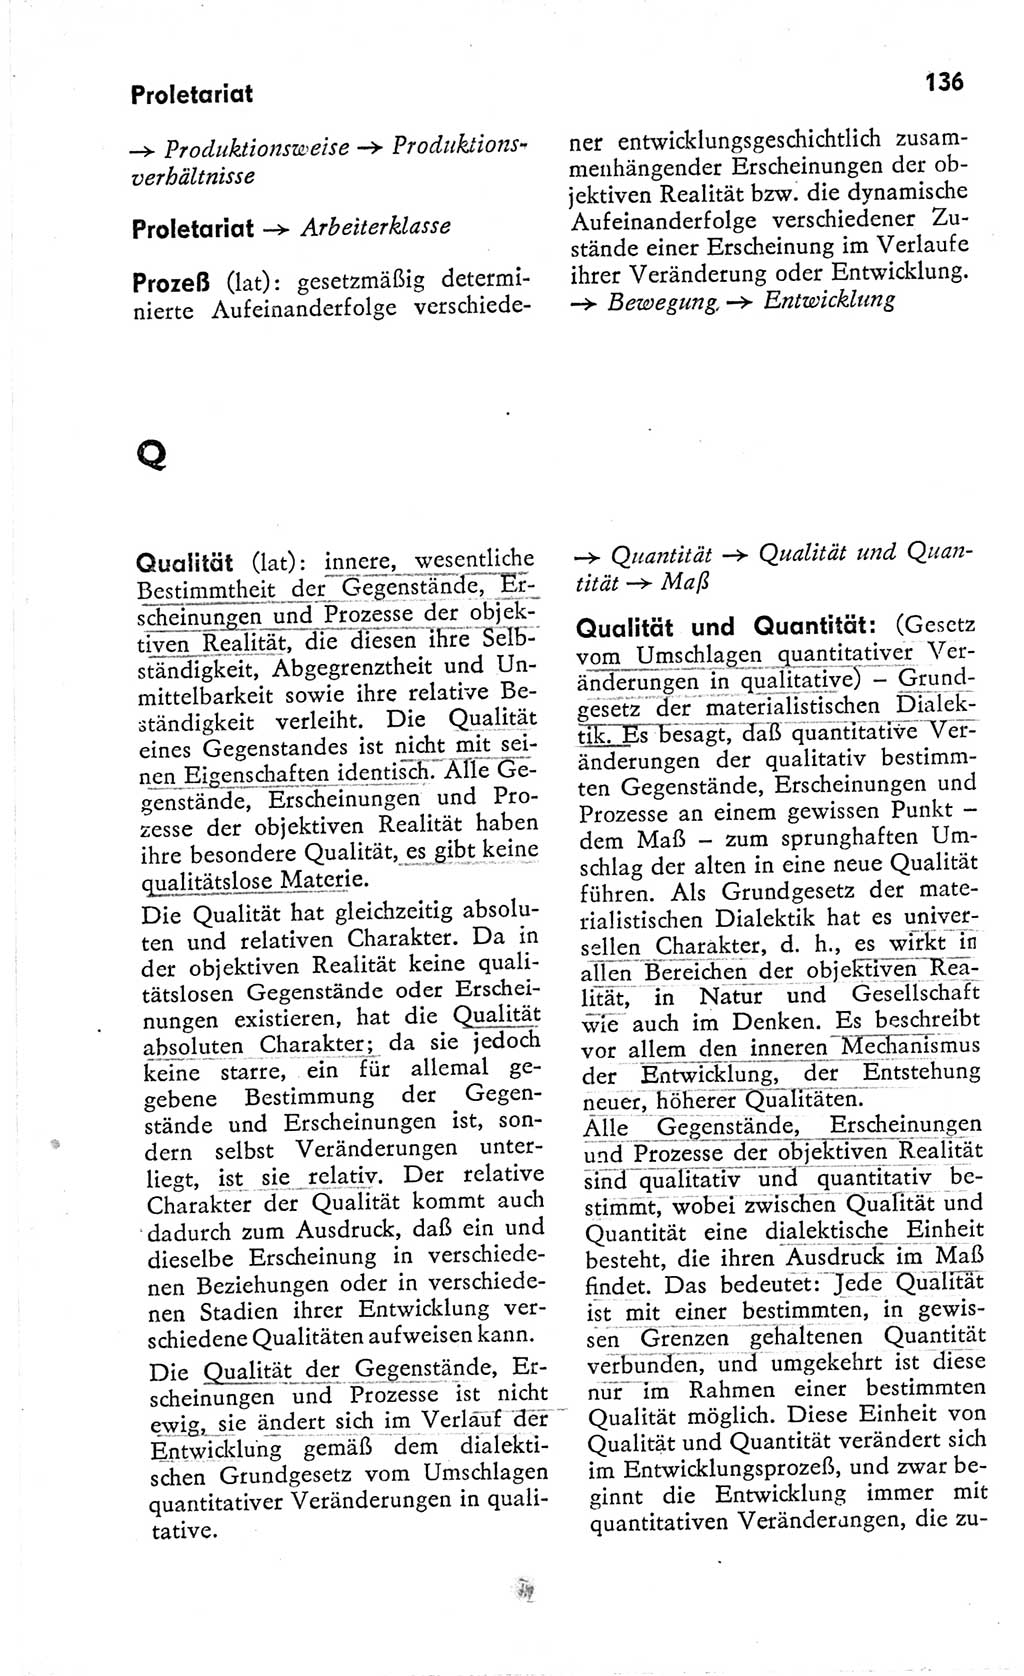 Kleines Wörterbuch der marxistisch-leninistischen Philosophie [Deutsche Demokratische Republik (DDR)] 1966, Seite 136 (Kl. Wb. ML Phil. DDR 1966, S. 136)